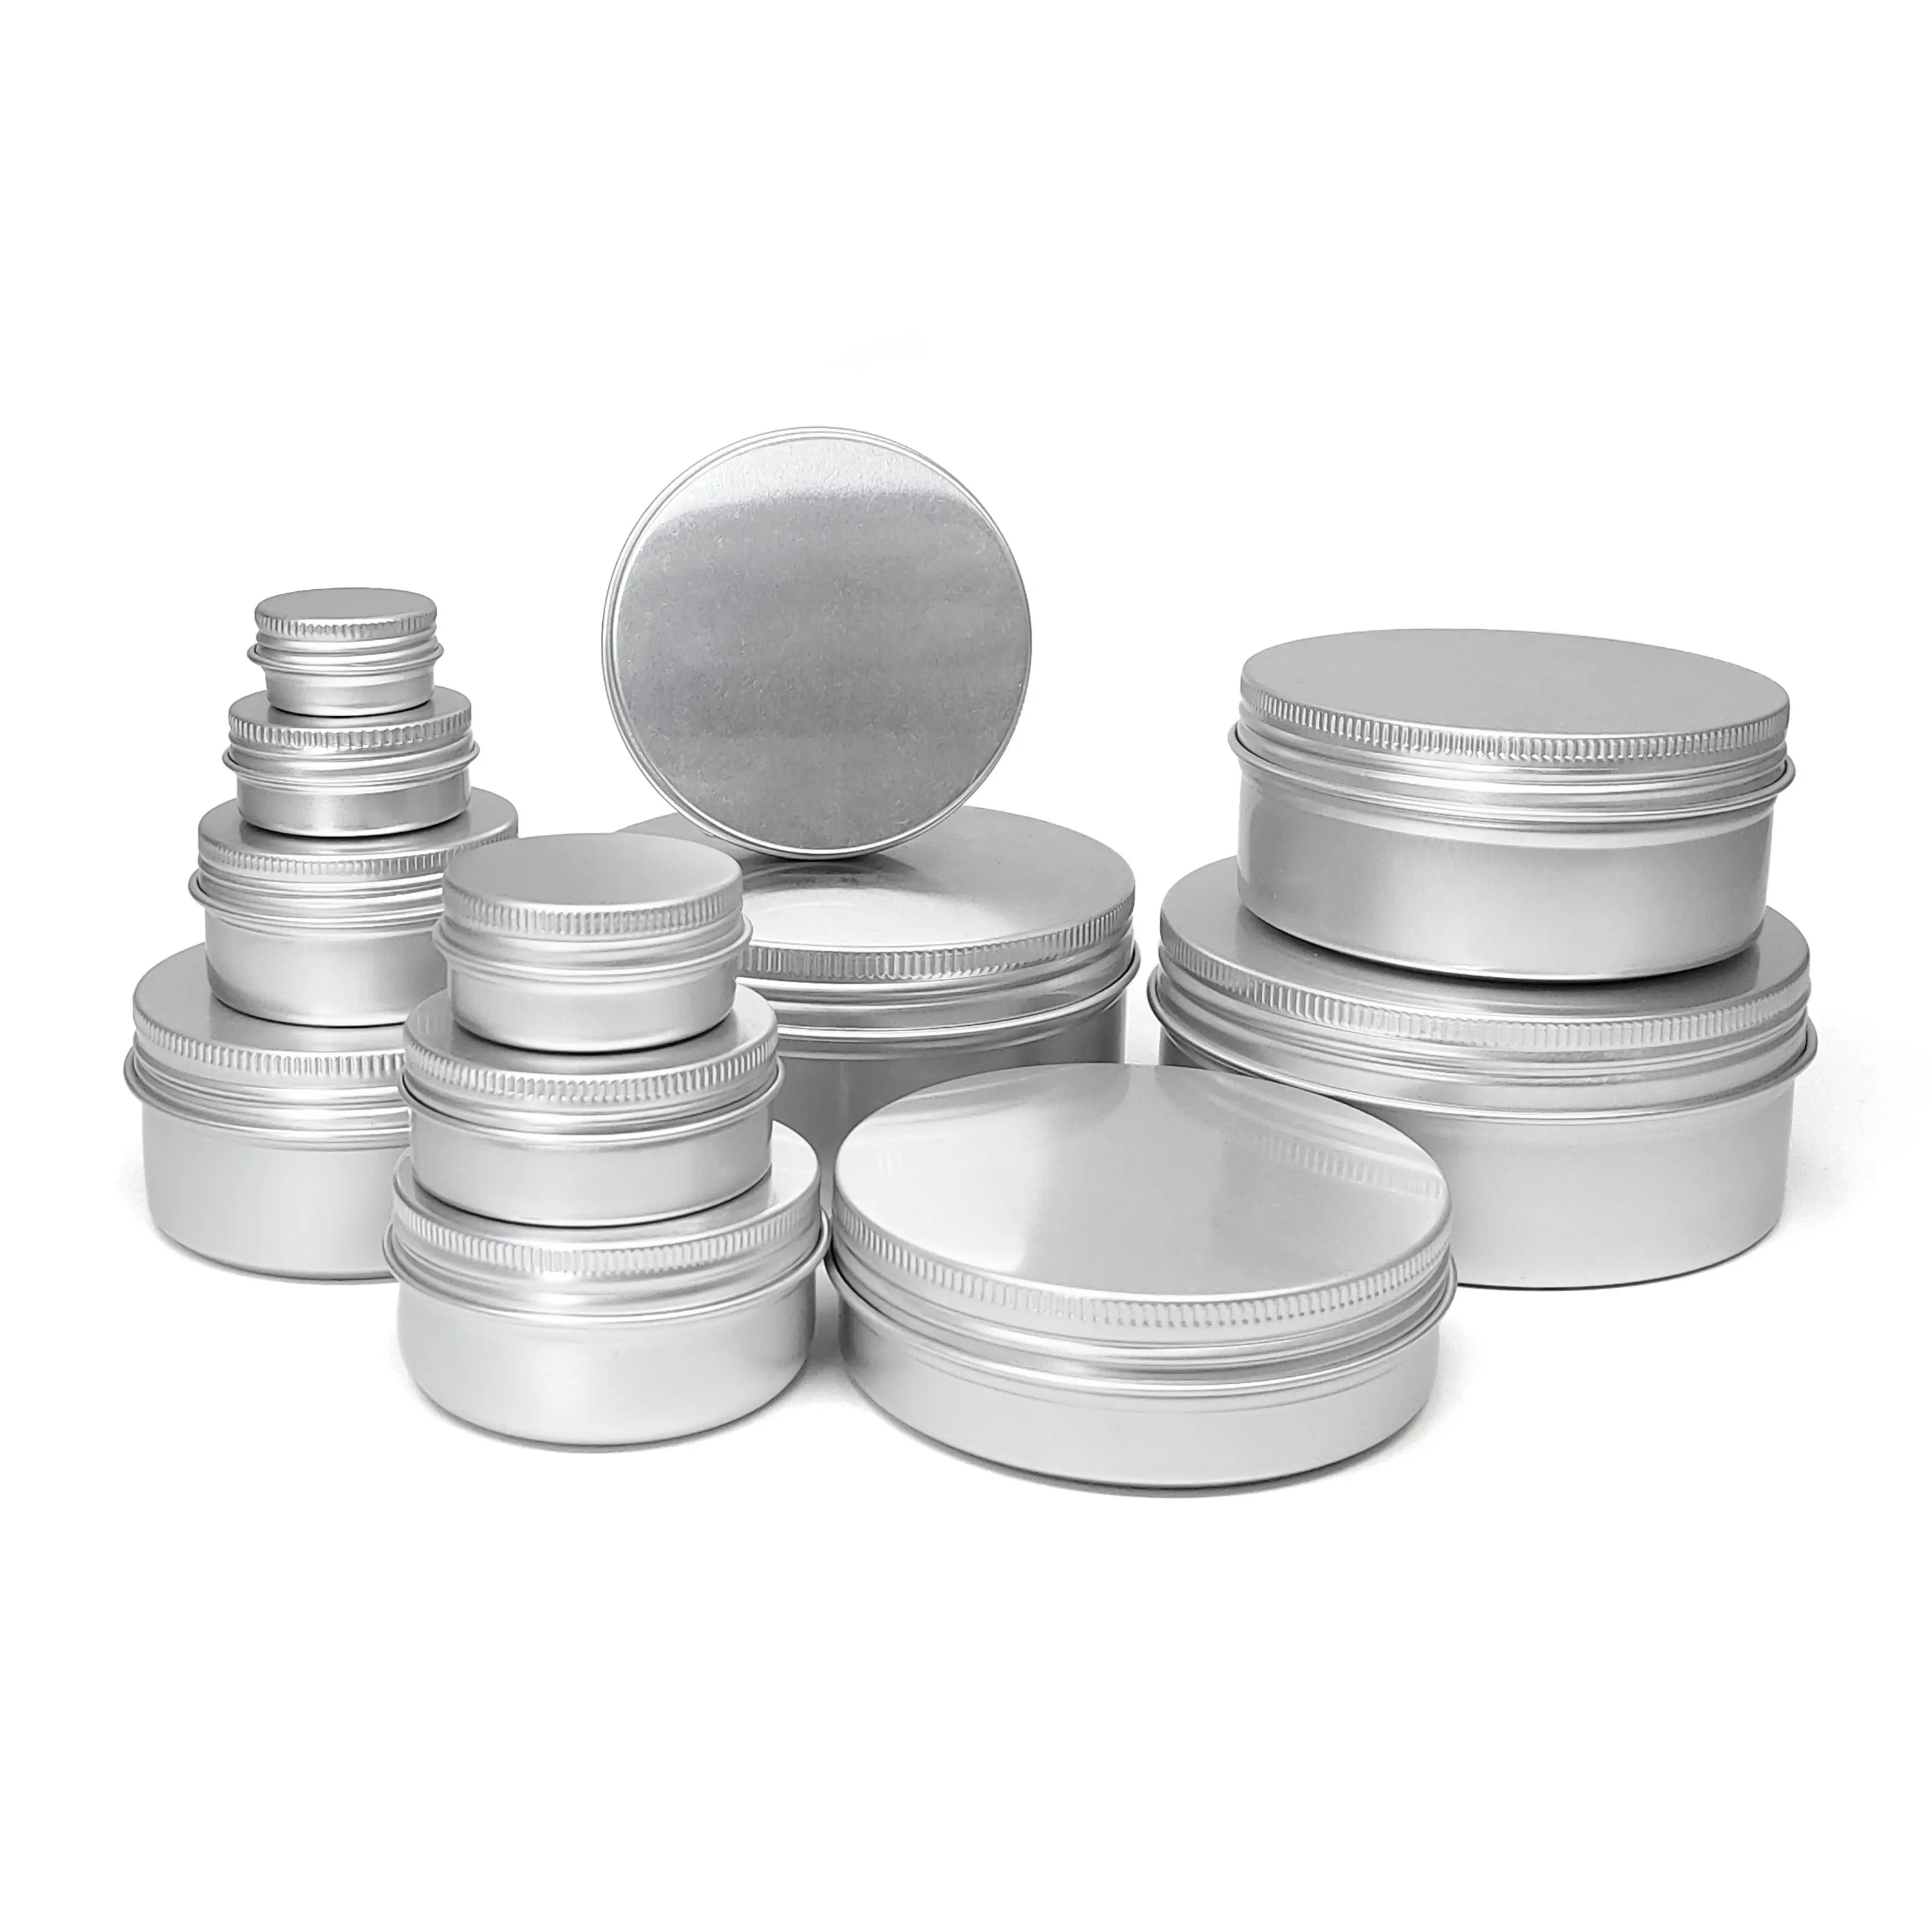 Lata de Metal redonda de aluminio, bote de 10g, 15g, 20g, 25g, 30g, 50g, 60g, 80g, 100g, latas cosméticas de aluminio